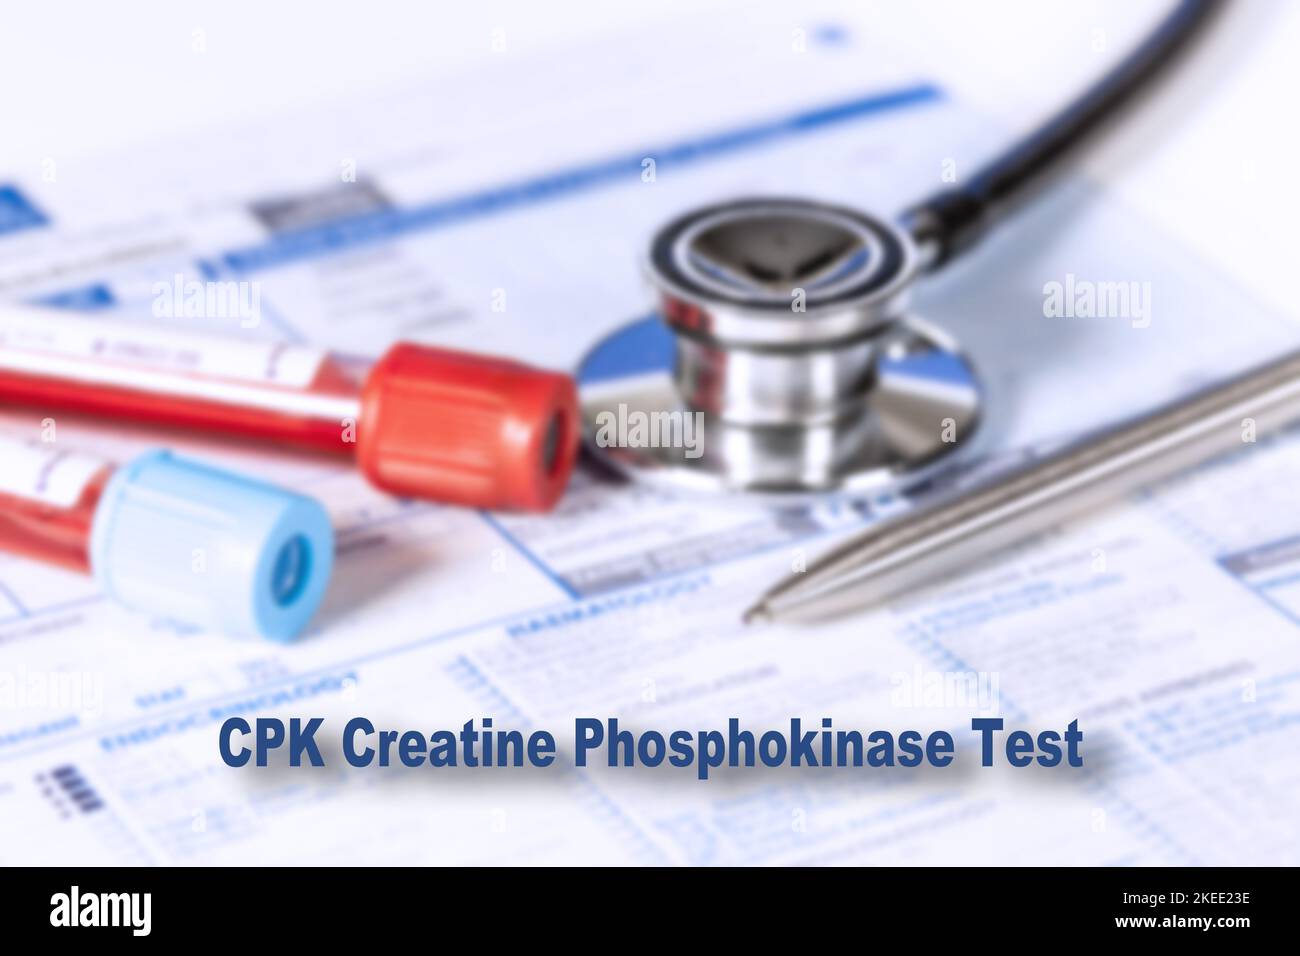 Kreatin-Phosphokinase-Test, konzeptuelles Bild Stockfoto